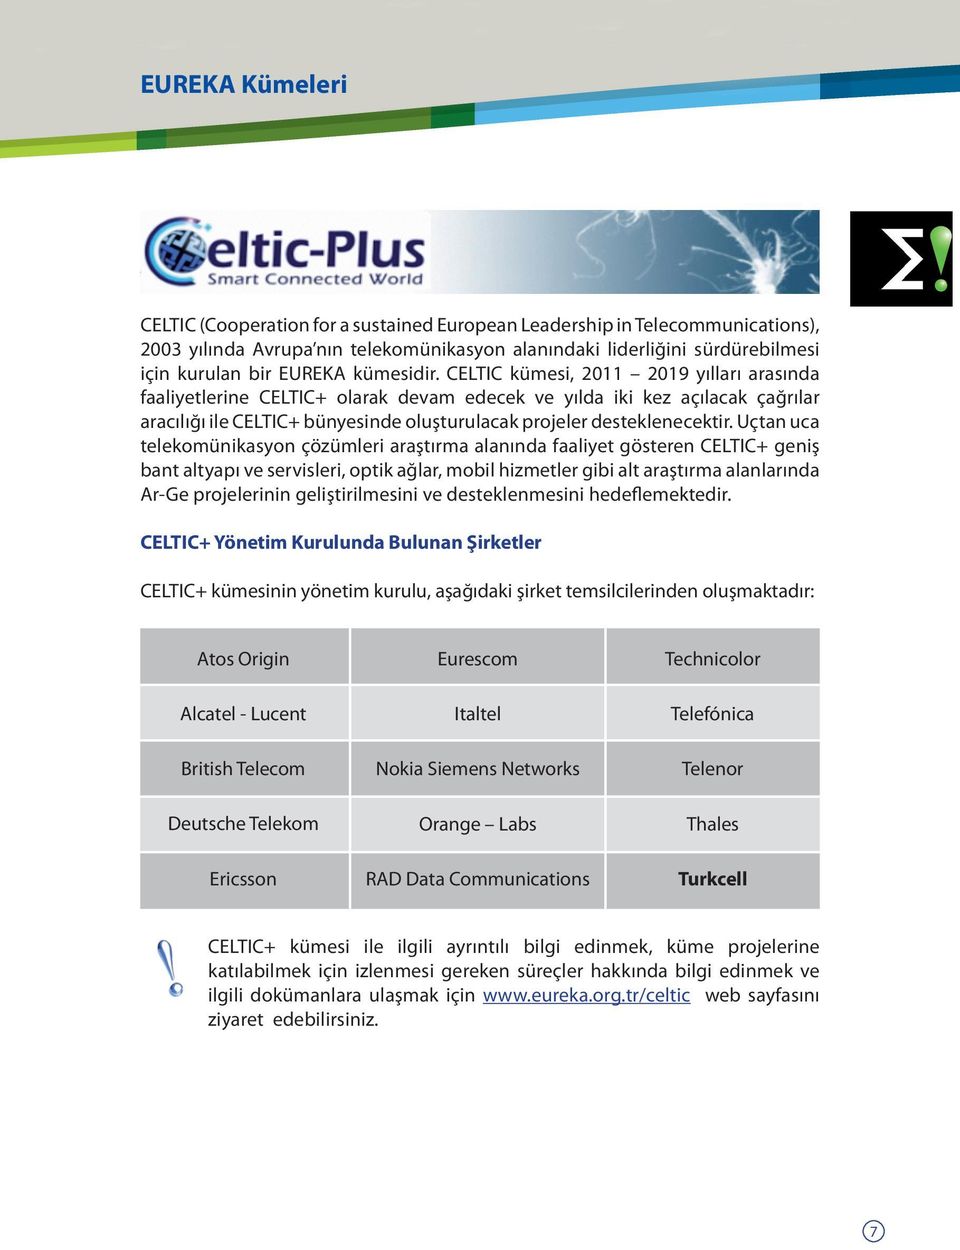 CELTIC kümesi, 2011 2019 yılları arasında faaliyetlerine CELTIC+ olarak devam edecek ve yılda iki kez açılacak çağrılar aracılığı ile CELTIC+ bünyesinde oluşturulacak projeler desteklenecektir.